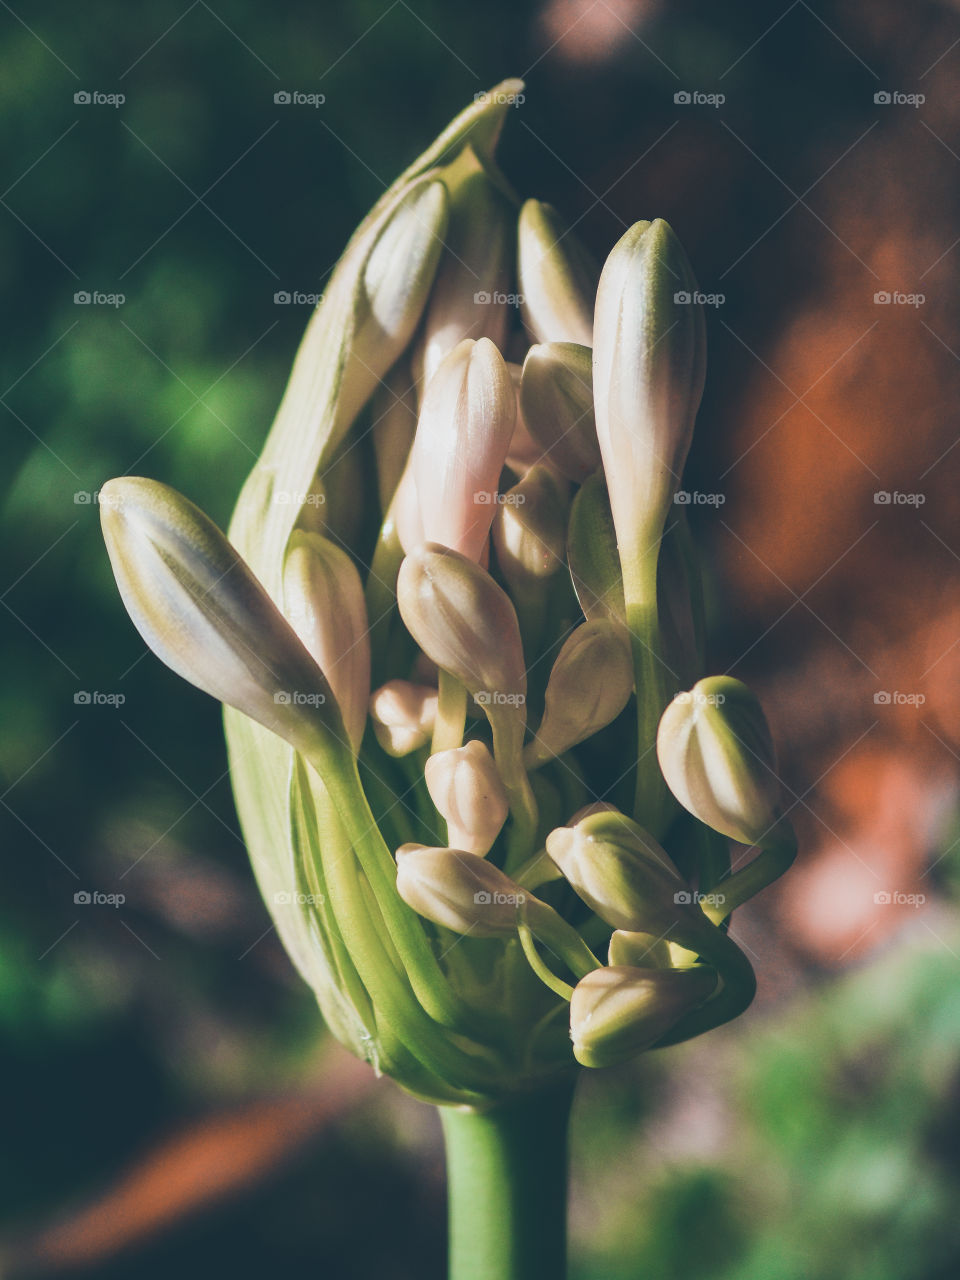 agapanthus flower bursting open